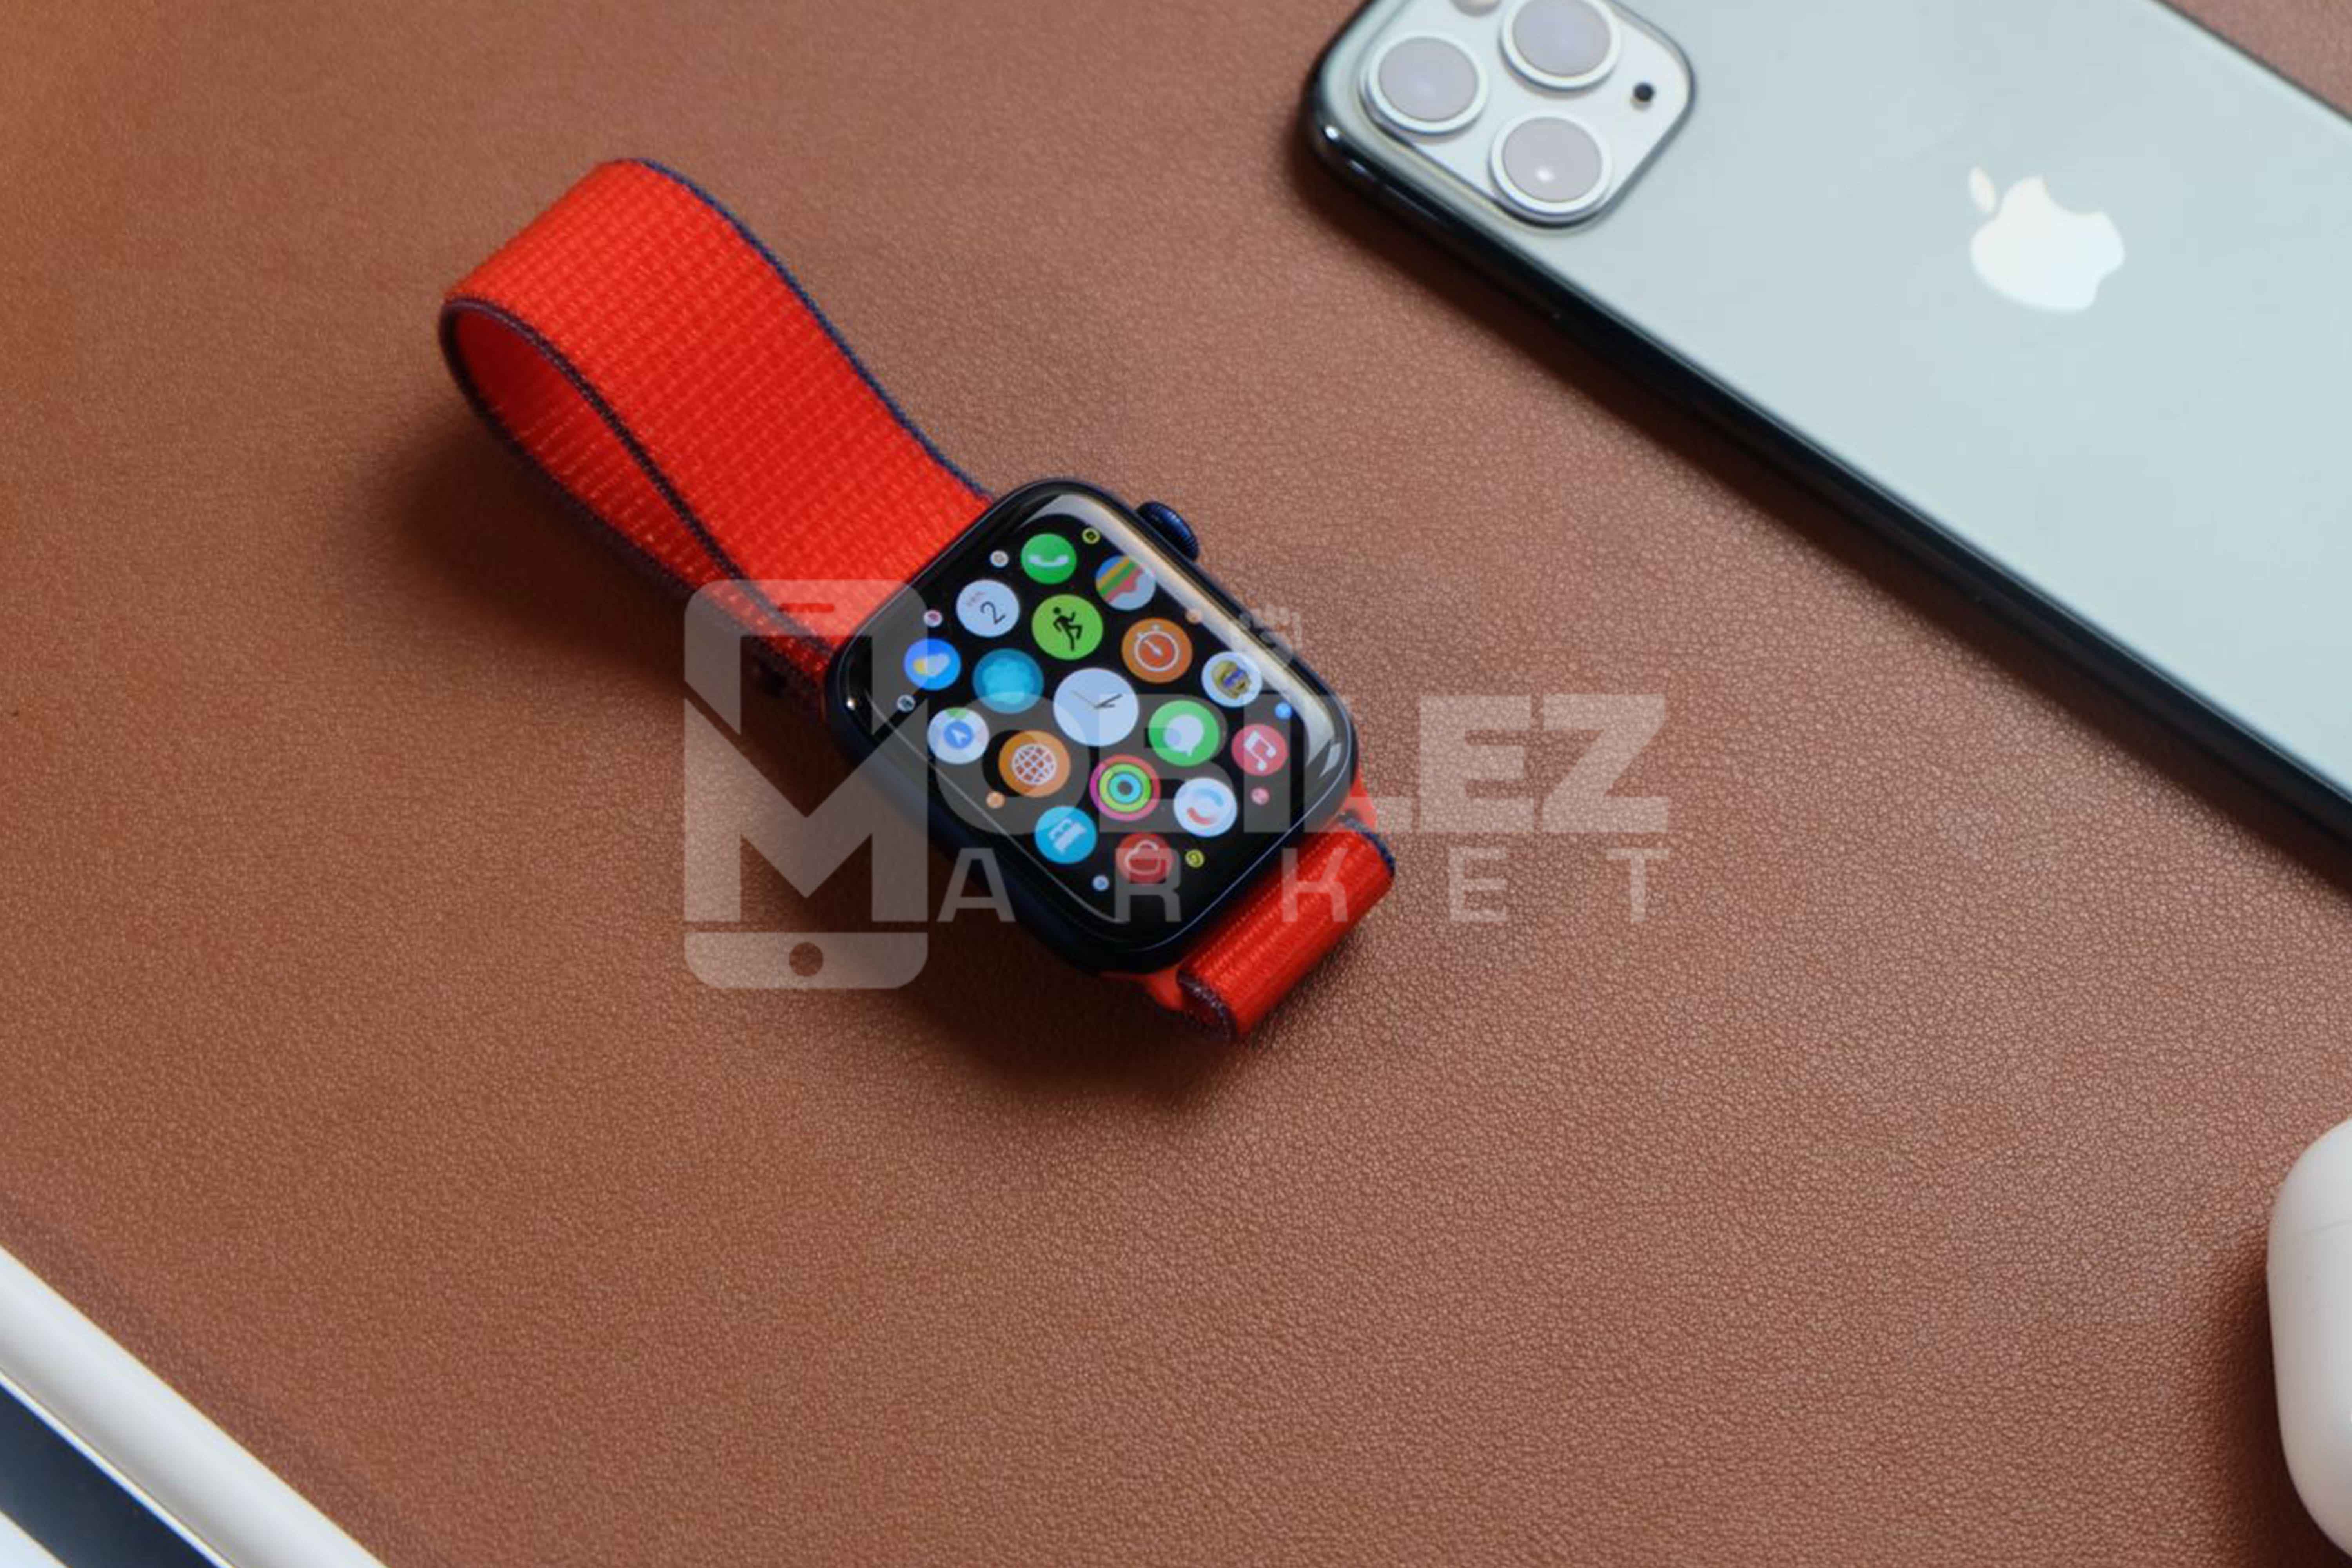 Buy Apple Watch Bands Online | Buy iPhone 13 Mini Online